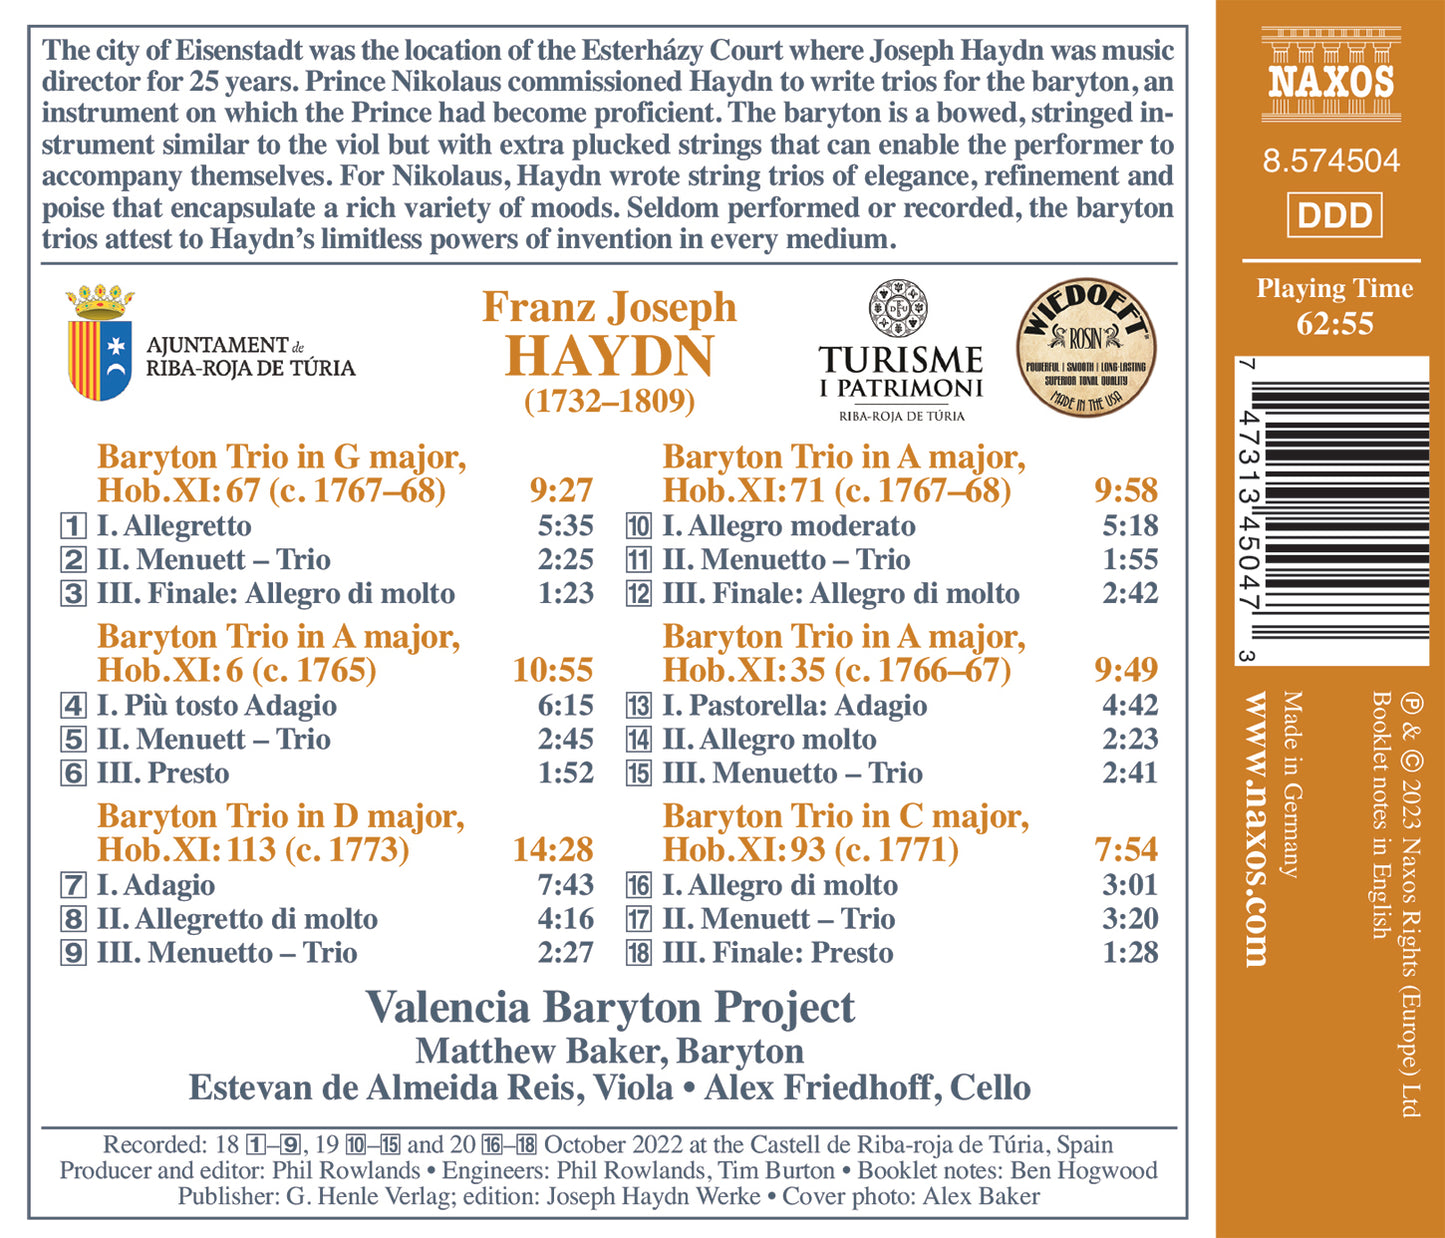 Haydn: Baryton Trios Nos. 6, 35, 67, 71, 93 & 113  Valencia Baryton Project